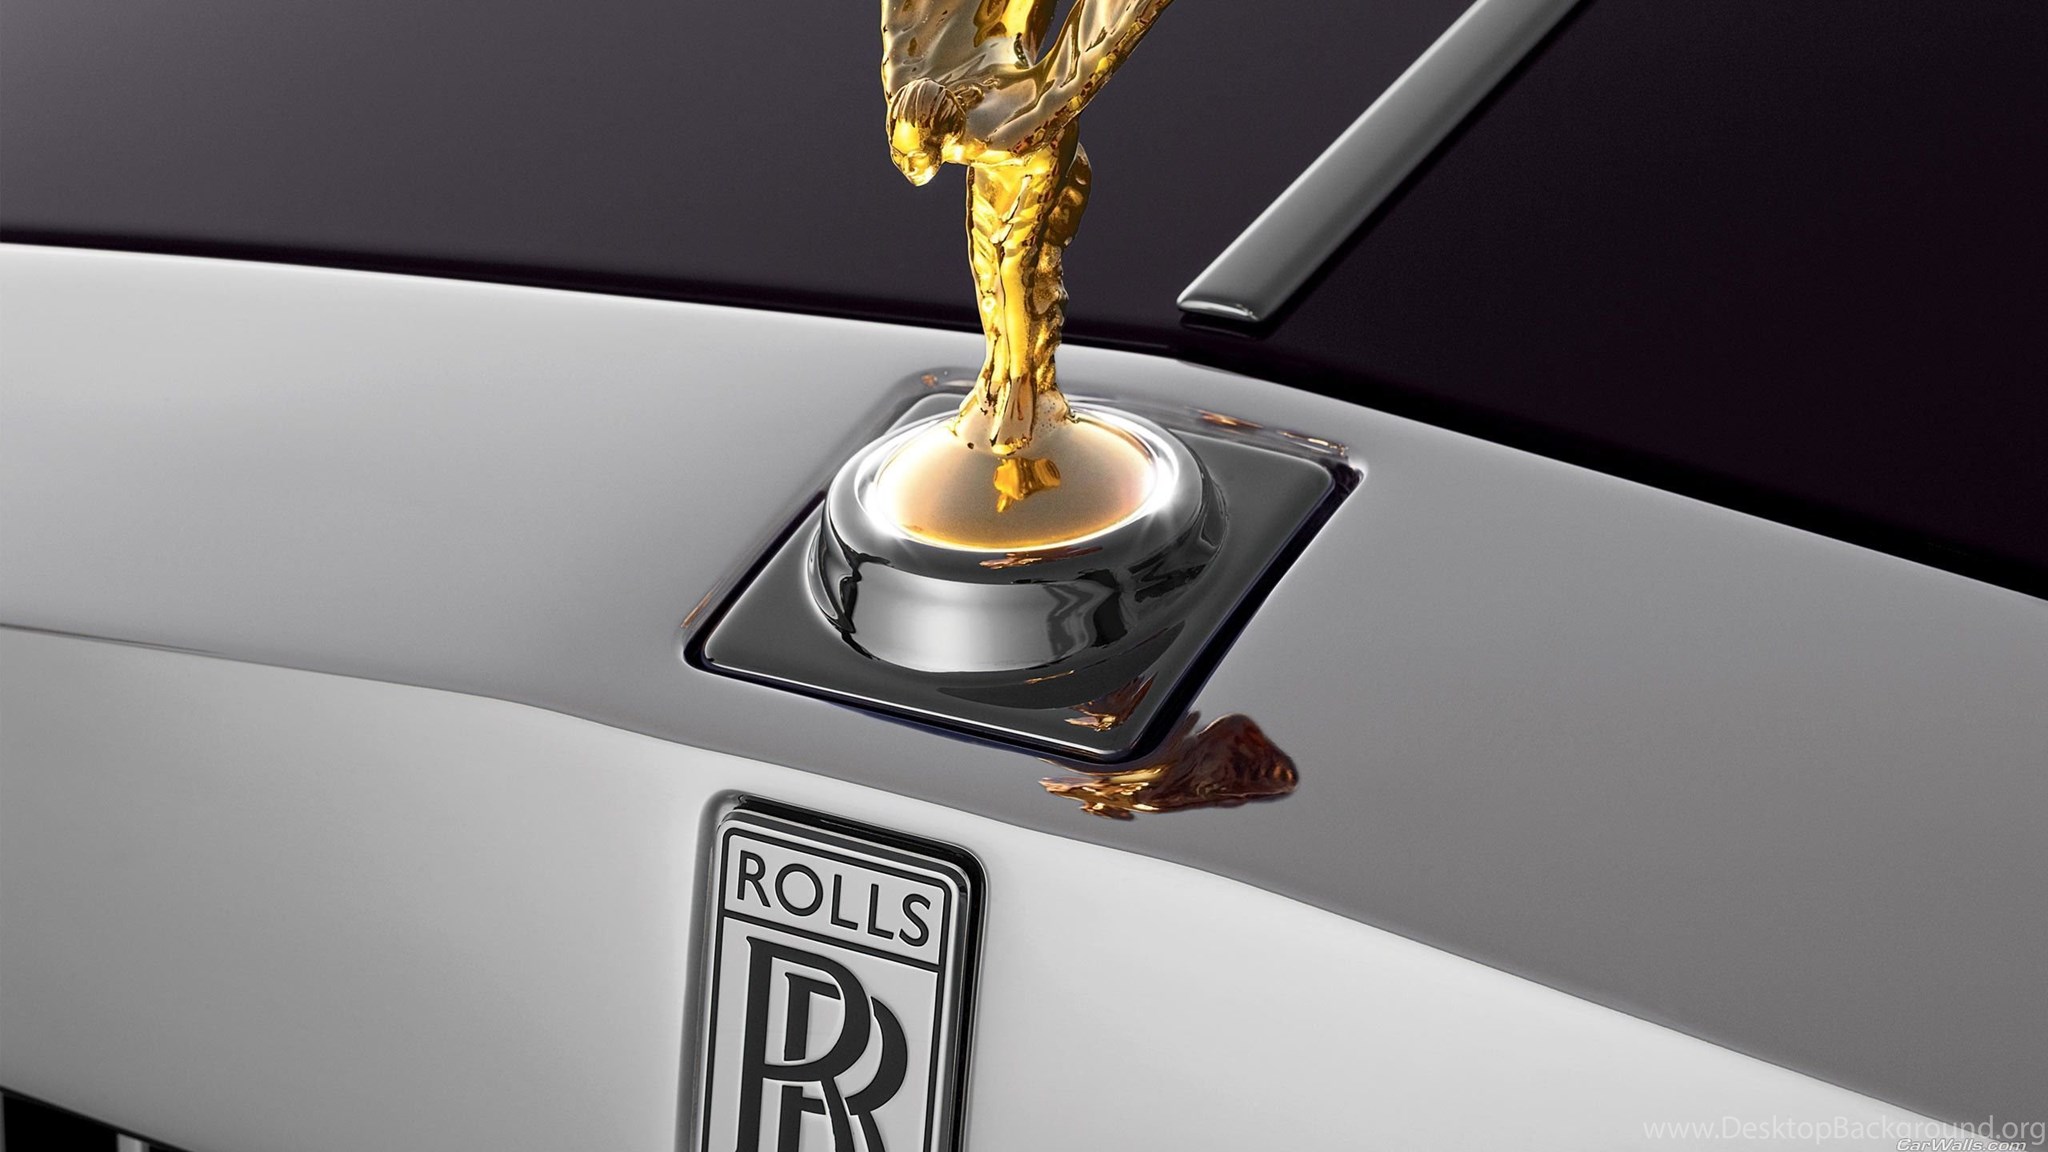 Значки на капоте машины. Rolls Royce дух экстаза. Роллс Ройс Фантом значок. Дух экстаза на Rolls Royce Phantom. Rolls Royce шильдик.